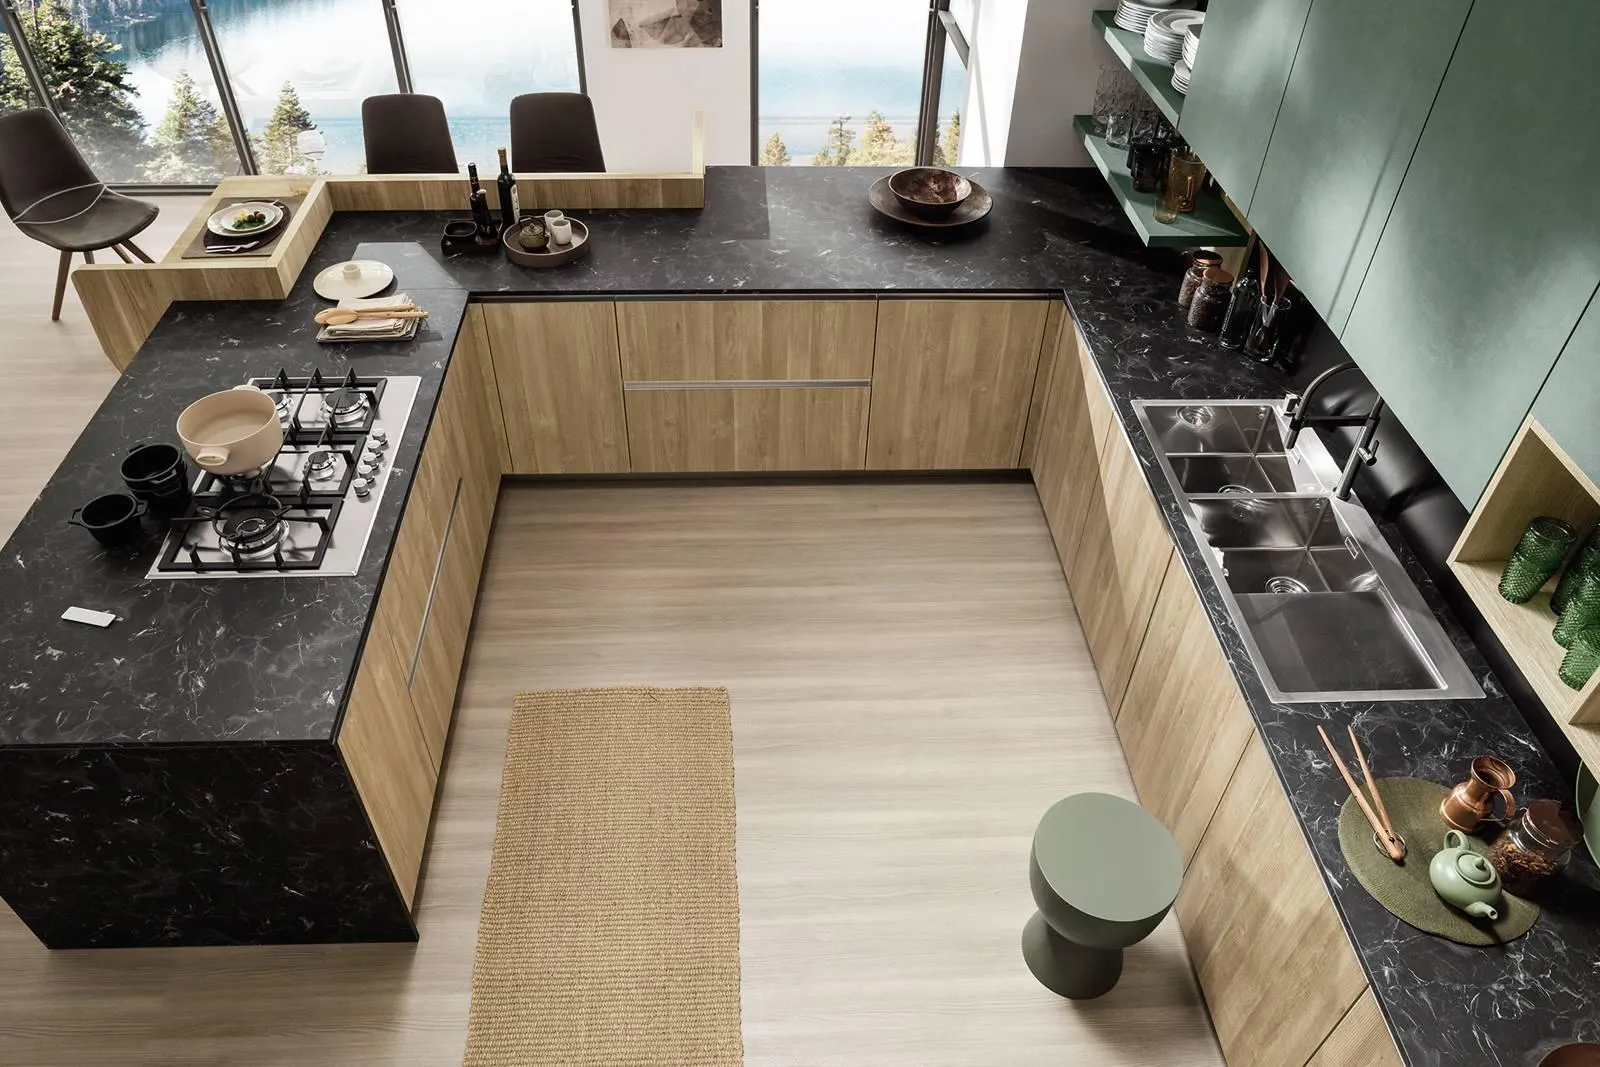 Piani cucina effetto marmo: il vantaggio della bellezza abbinato a  resistenza e facilità di pulizia - Cose di Casa